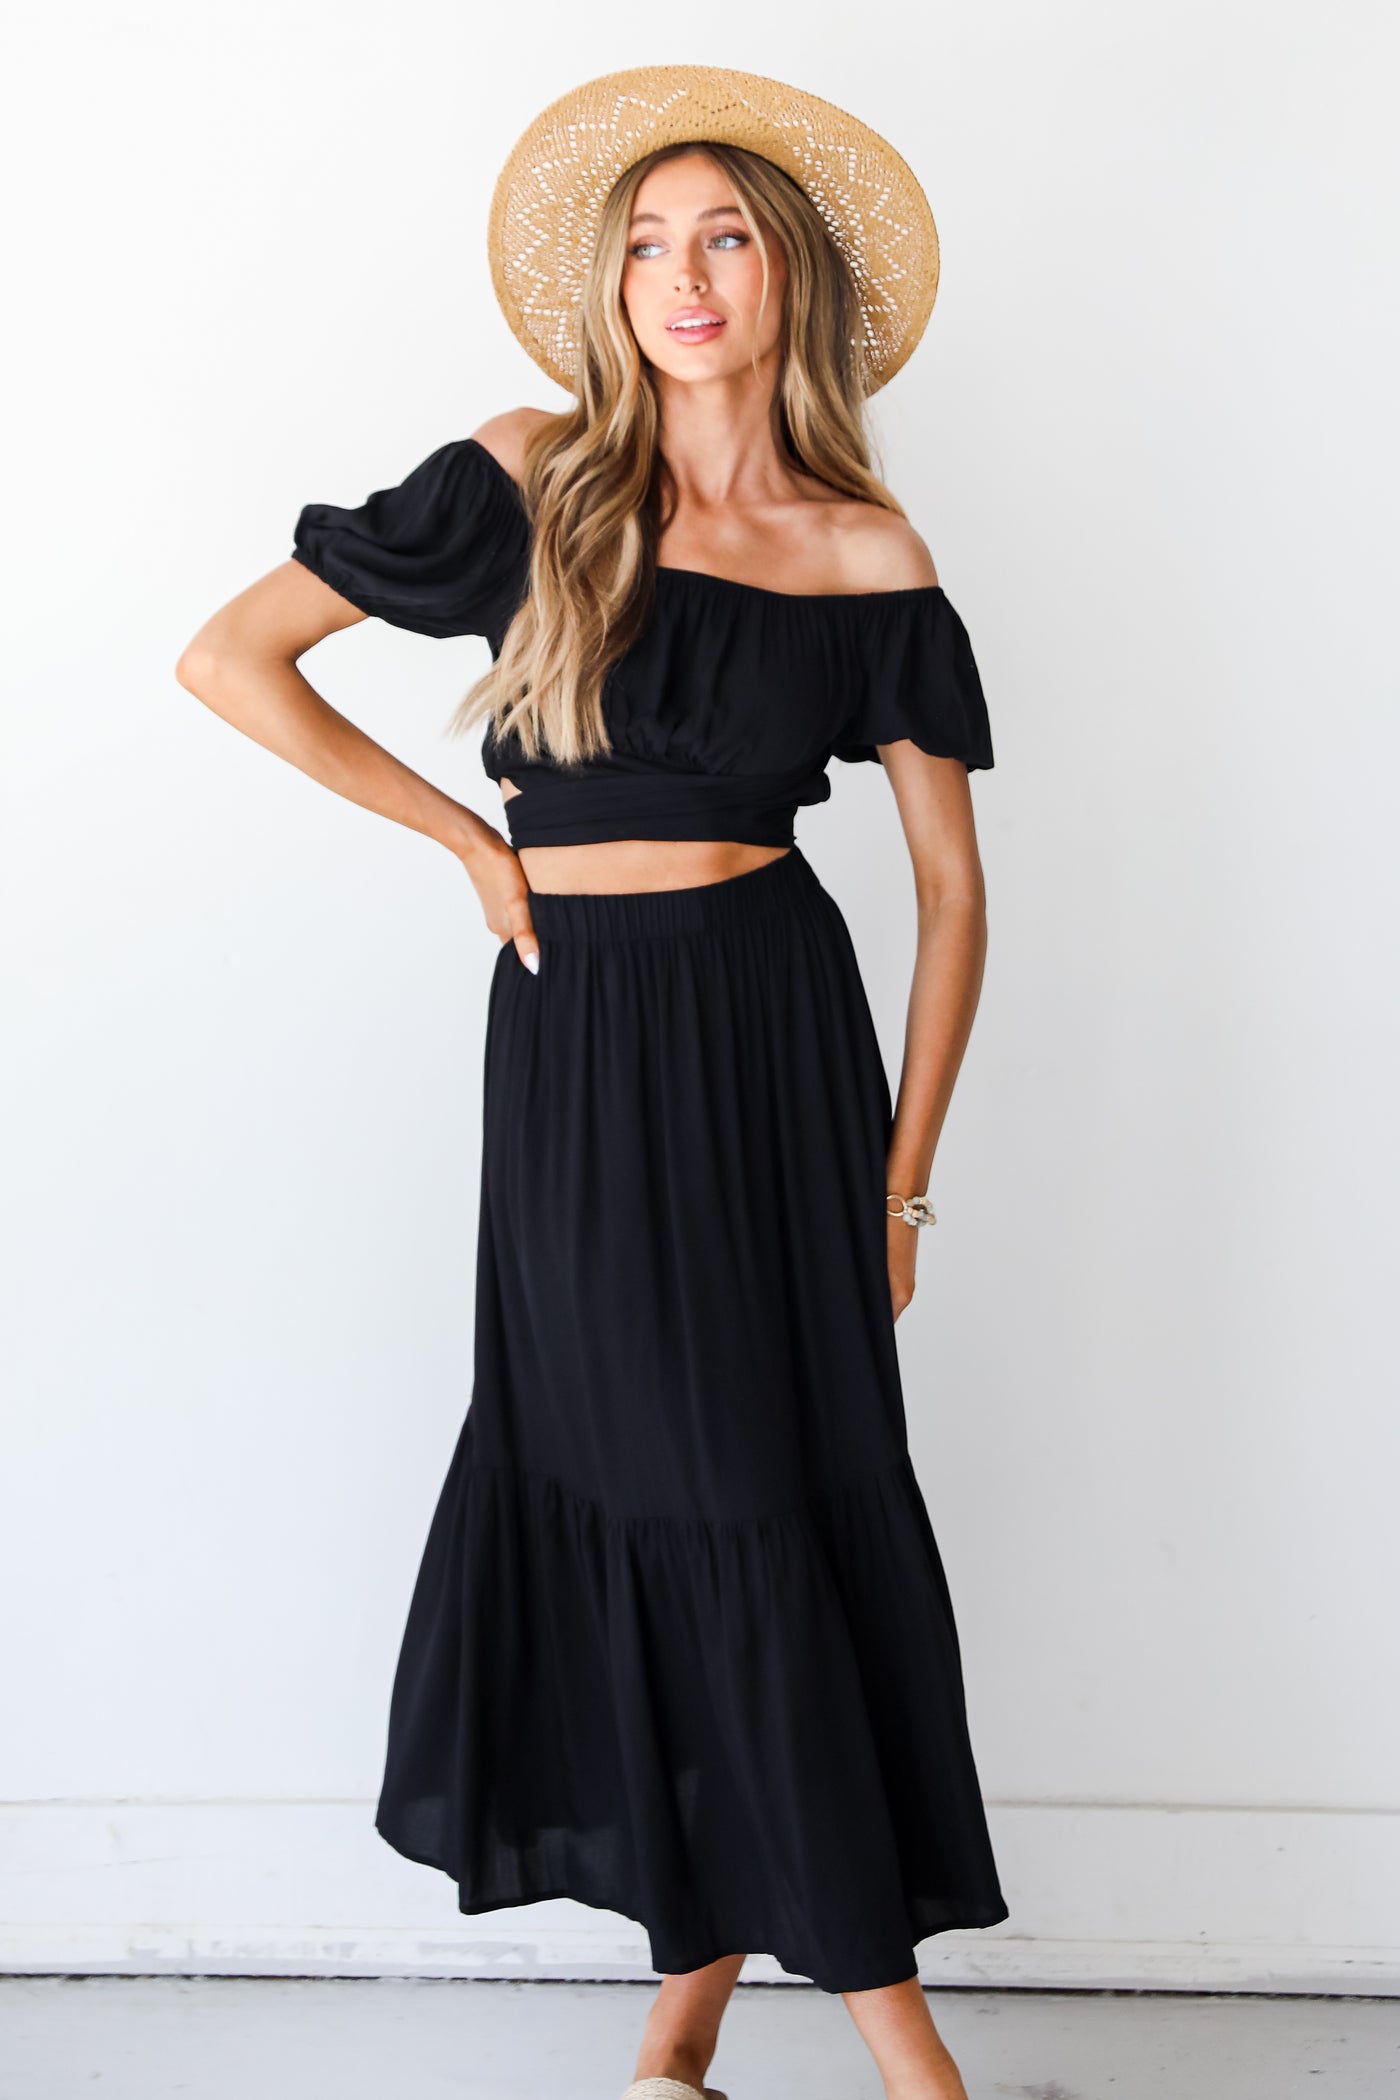 black Maxi Skirt on dress up model